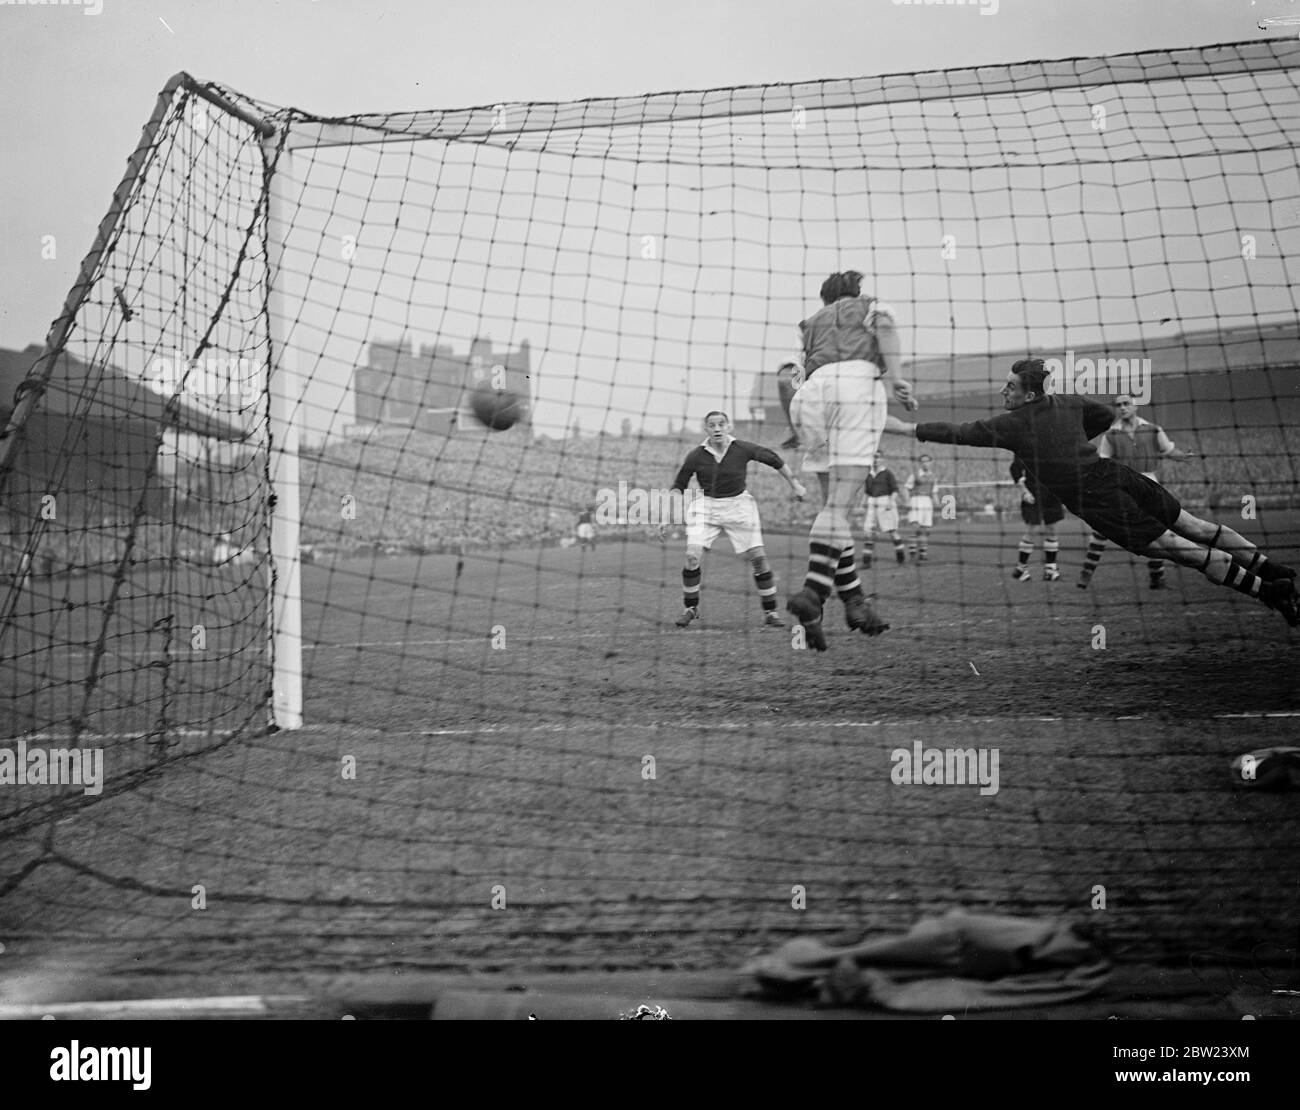 Chelsea rencontre Arsenal dans la première division de Londres darby au pont Stamford. Spectacles de photos: Swindin, le gardien de but d'Arsenal, se cramponnant à travers le but dans un effort vain pour sauver le deuxième but de Chelsea, marqué par Hanson. 15 octobre 1938 Banque D'Images